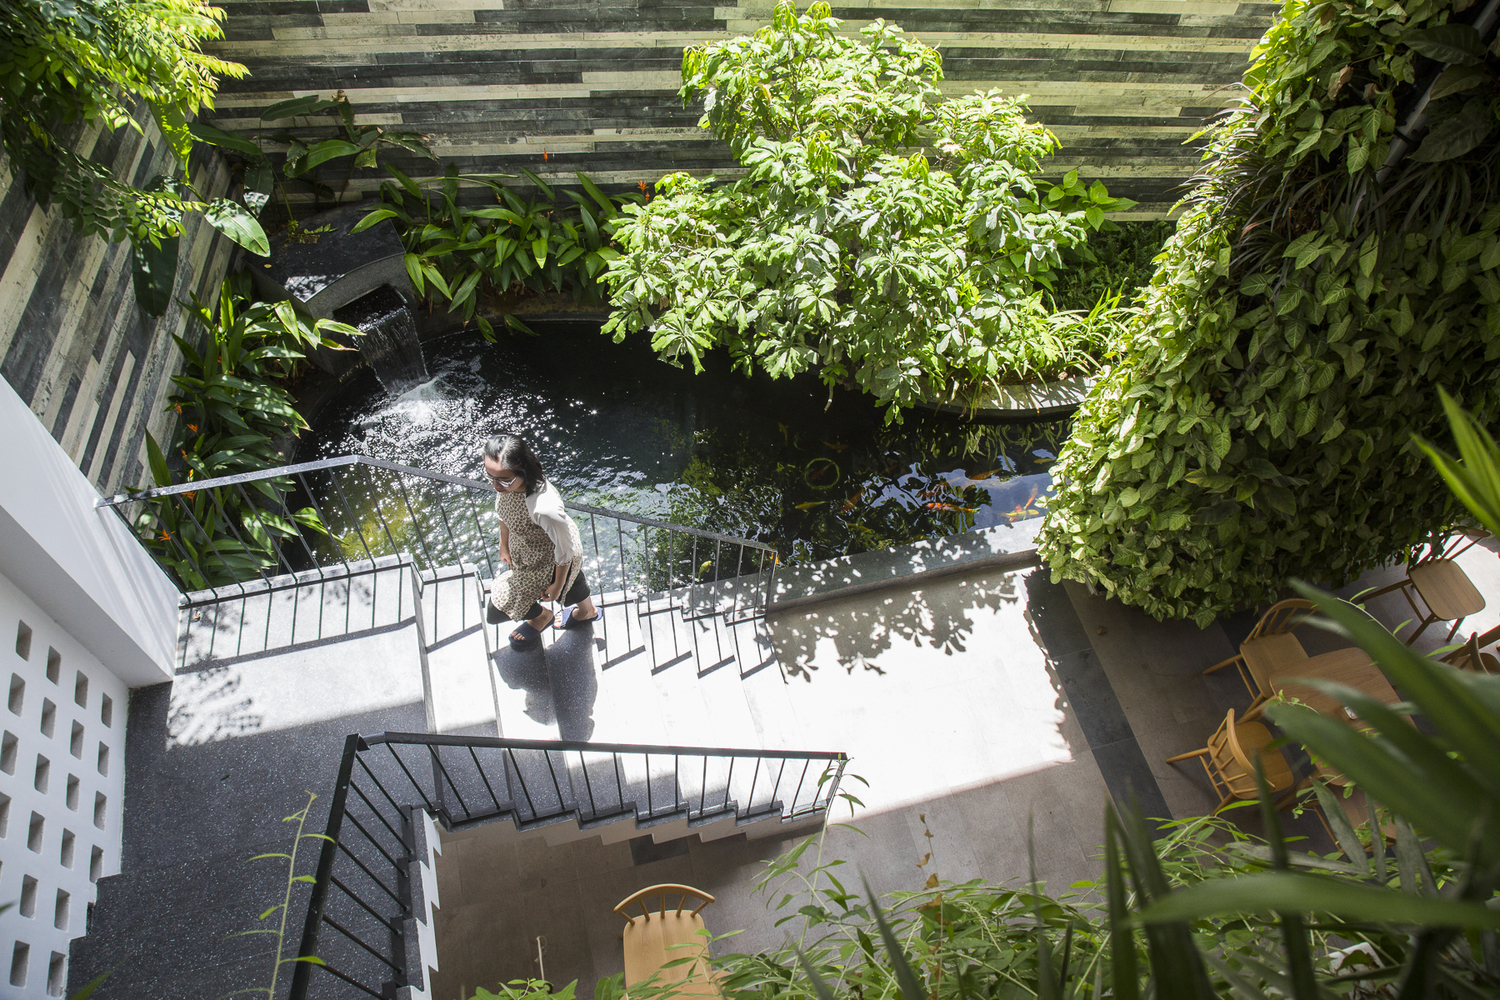 hình ảnh khuôn viên khách sạn xanh mát, hồ cá Koi sinh động, cây cối ngập tràn